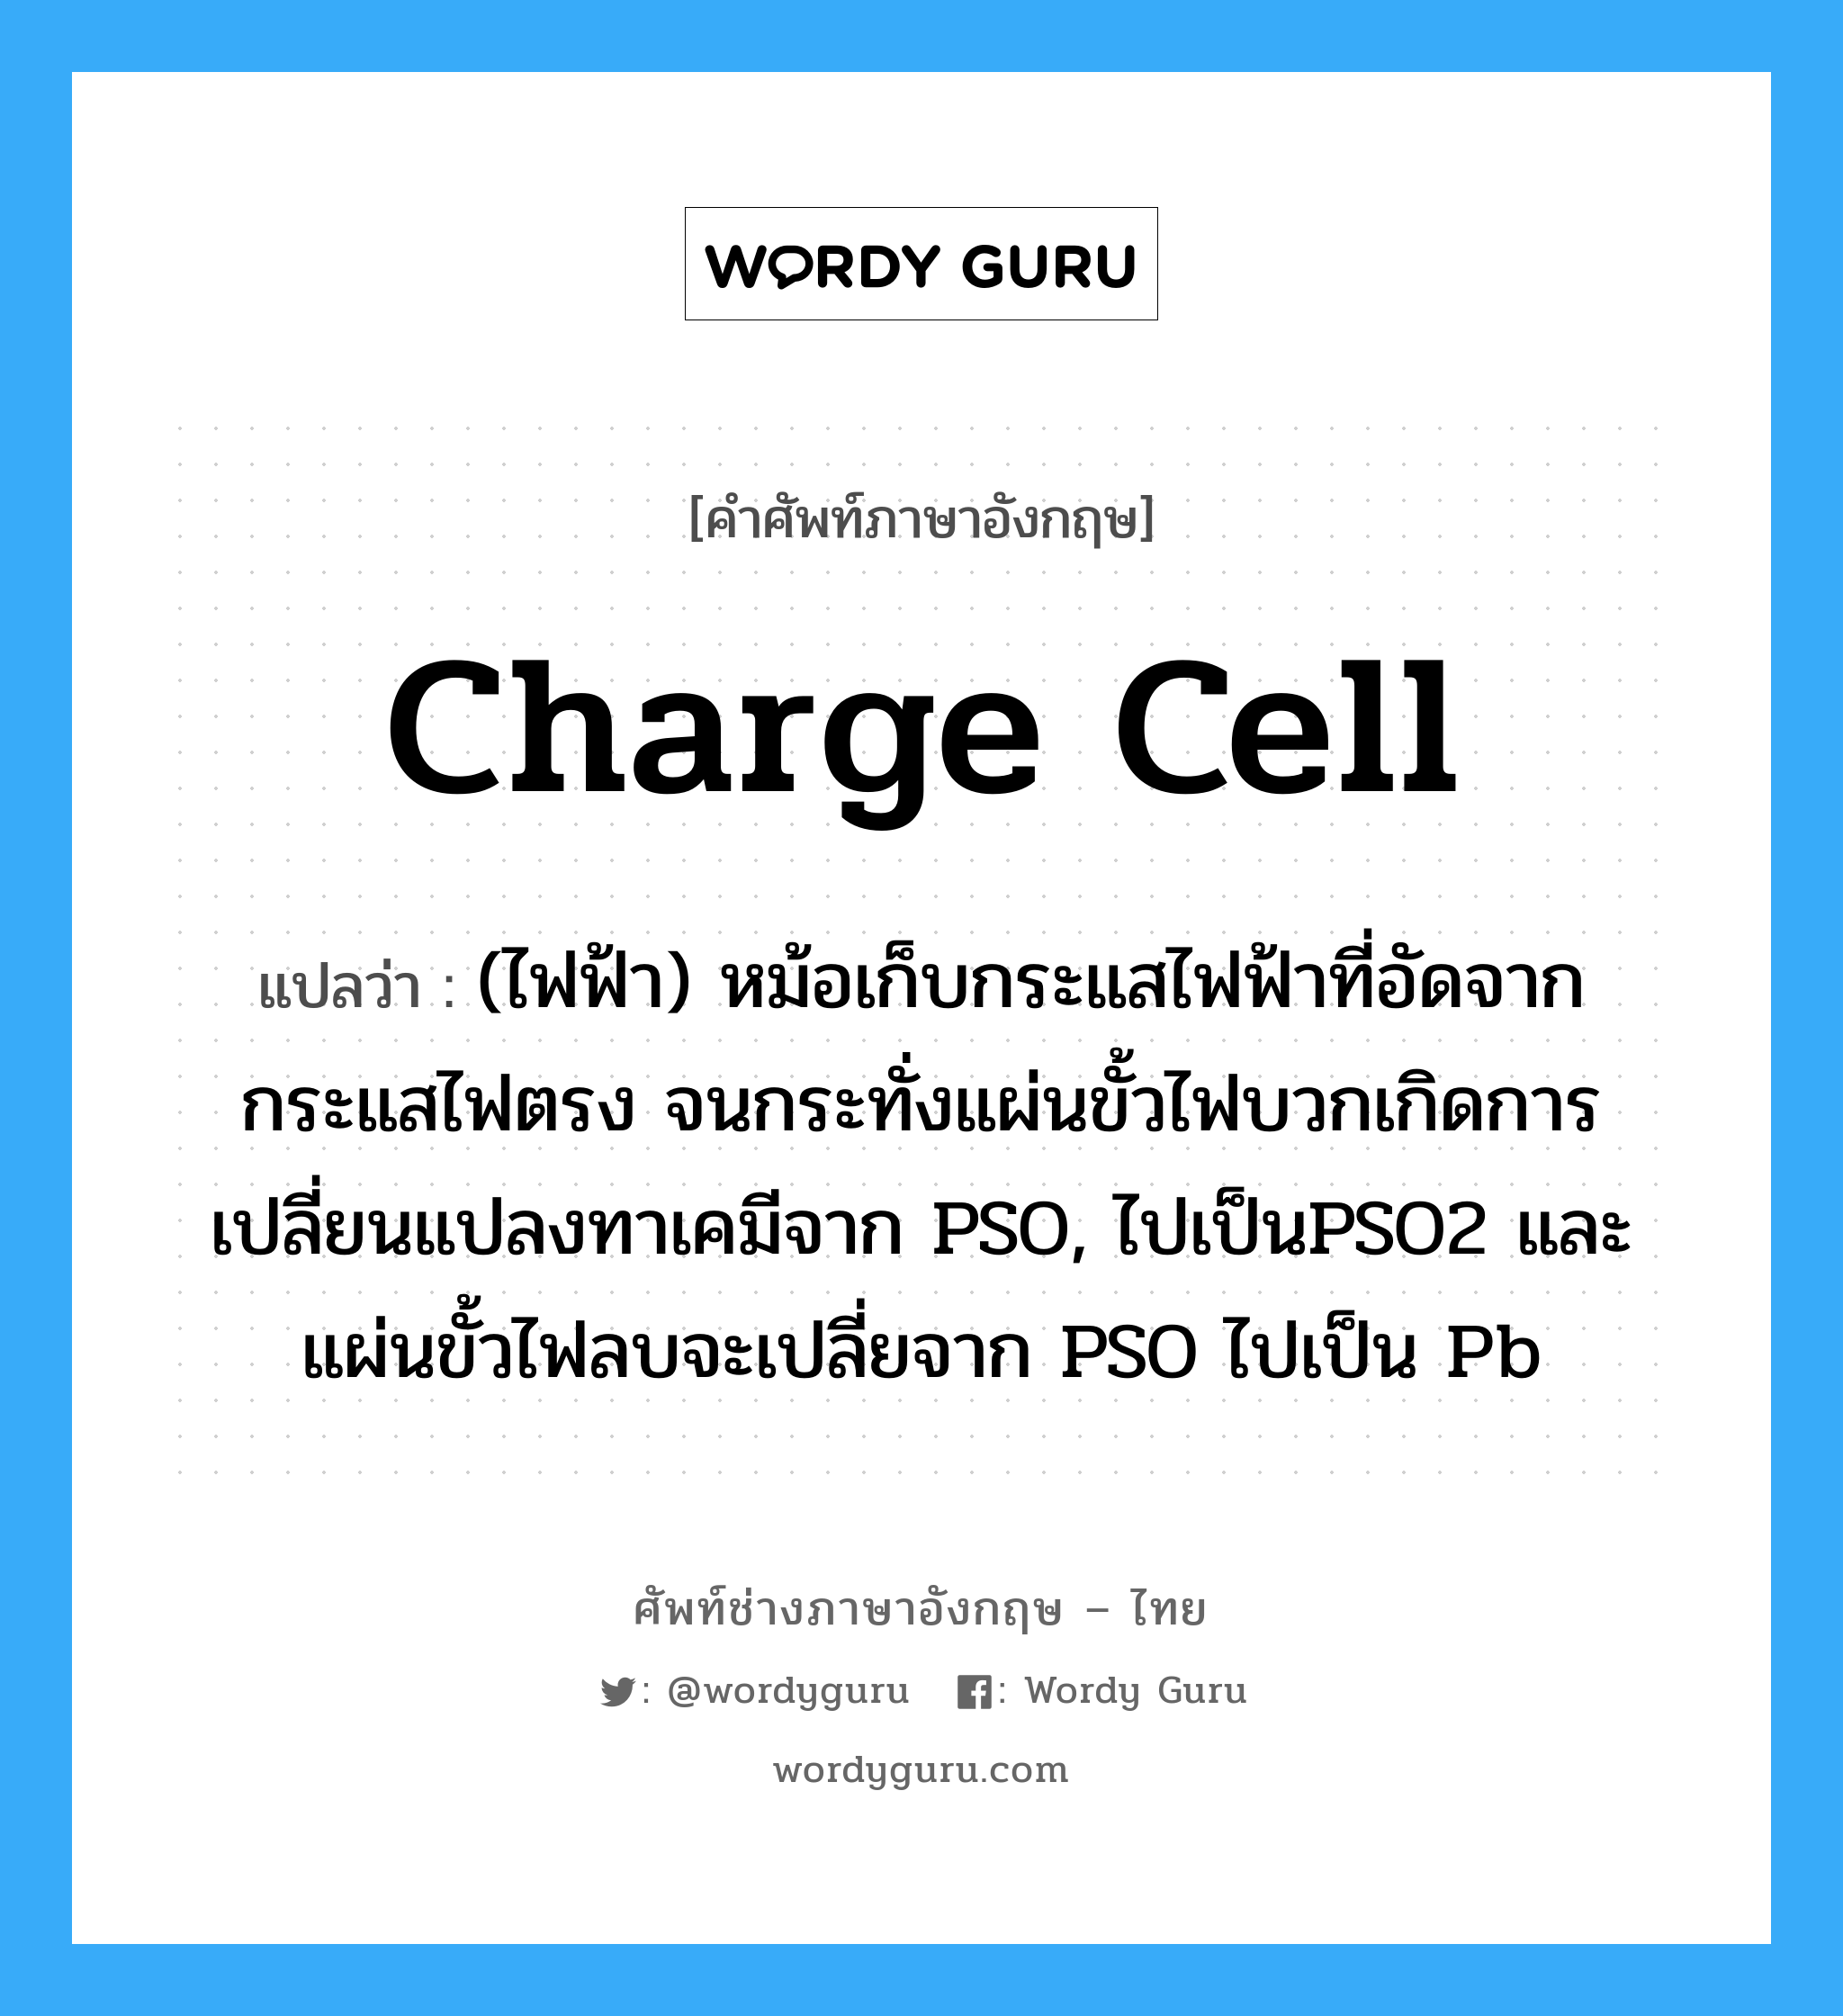 charge cell แปลว่า?, คำศัพท์ช่างภาษาอังกฤษ - ไทย charge cell คำศัพท์ภาษาอังกฤษ charge cell แปลว่า (ไฟฟ้า) หม้อเก็บกระแสไฟฟ้าที่อัดจากกระแสไฟตรง จนกระทั่งแผ่นขั้วไฟบวกเกิดการเปลี่ยนแปลงทาเคมีจาก PSO, ไปเป็นPSO2 และแผ่นขั้วไฟลบจะเปลี่ยจาก PSO ไปเป็น Pb